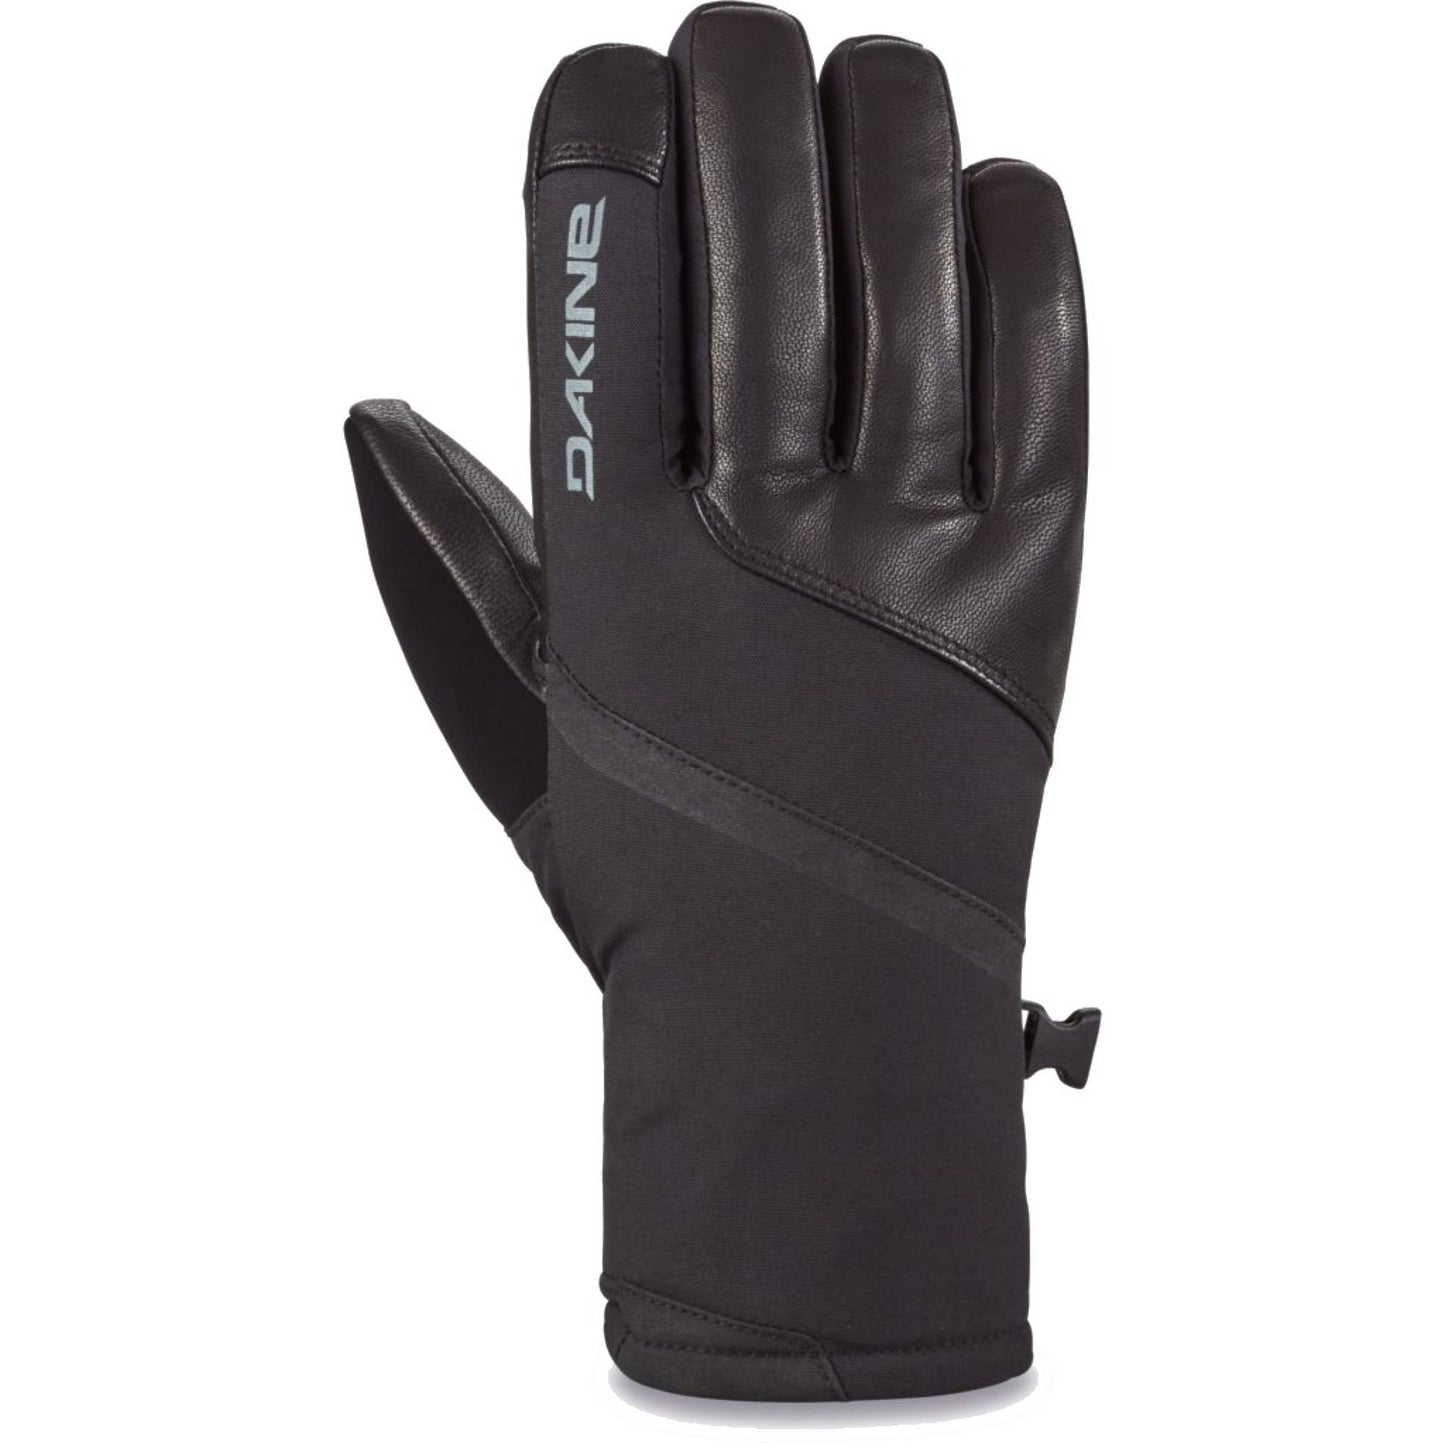 Dakine Women's Fleetwood GORE-TEX Short Glove Black Snow Gloves